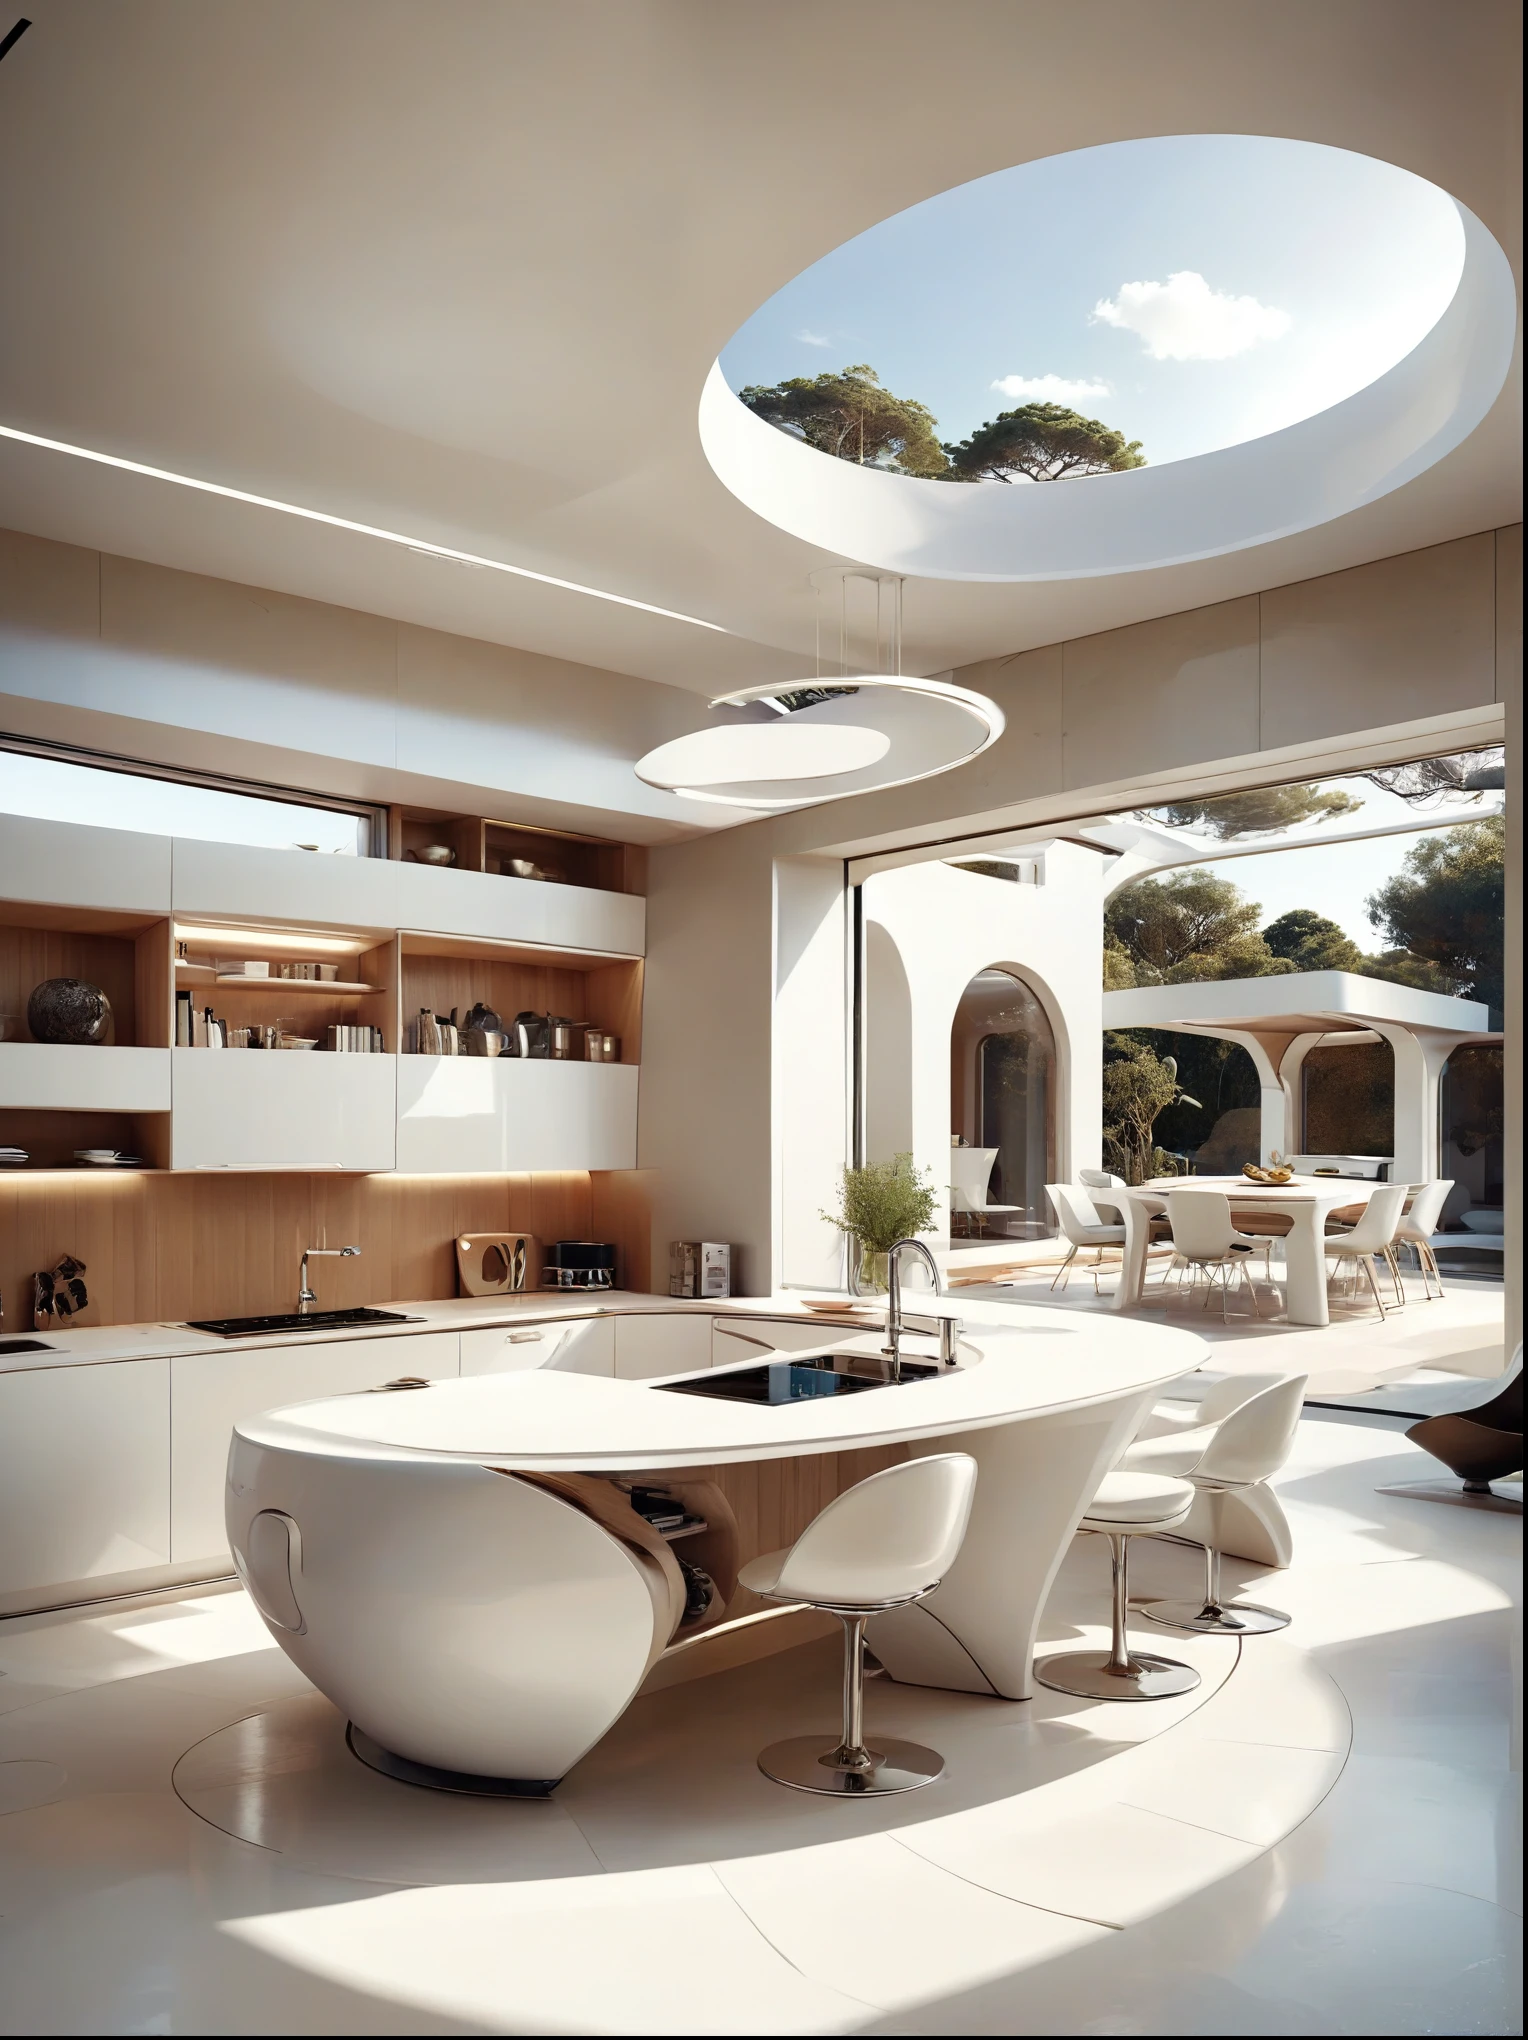 Le concept d&#39;étude de cuisine pour une maison futuriste intègre une fluidité organique、Cercles et formes géométriques，et utiliser l&#39;imagination artistique pour restituer des maisons et des paysages, Style technologique blanc pur，Espace intérieur spacieux, style wabi sabi.grand angle